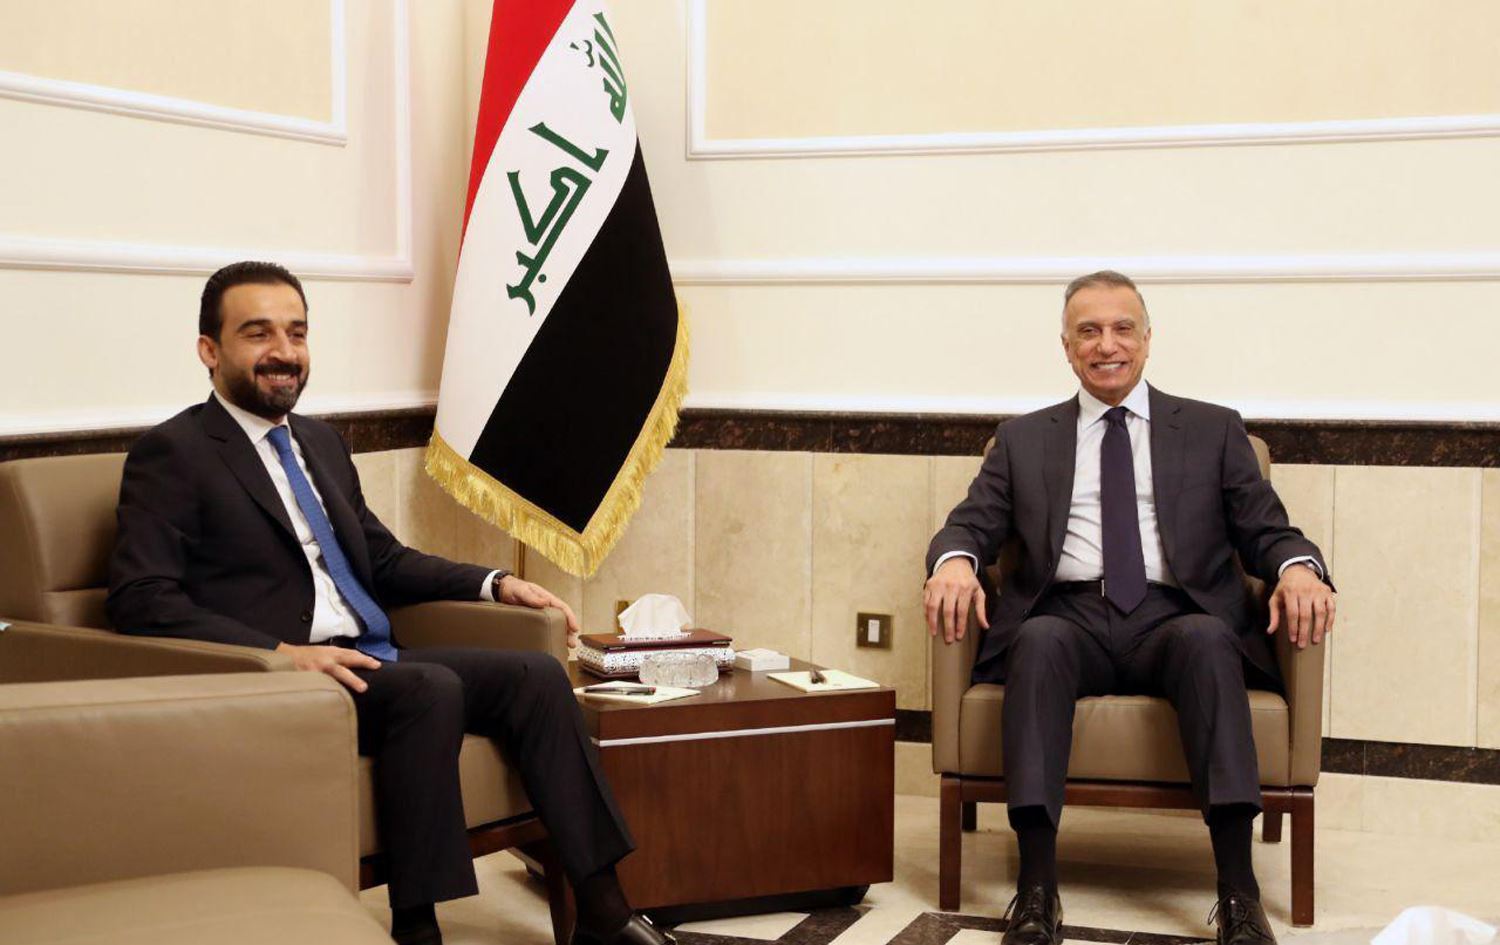 Al-Kadhimi and al-Halboosi meet senior western diplomats